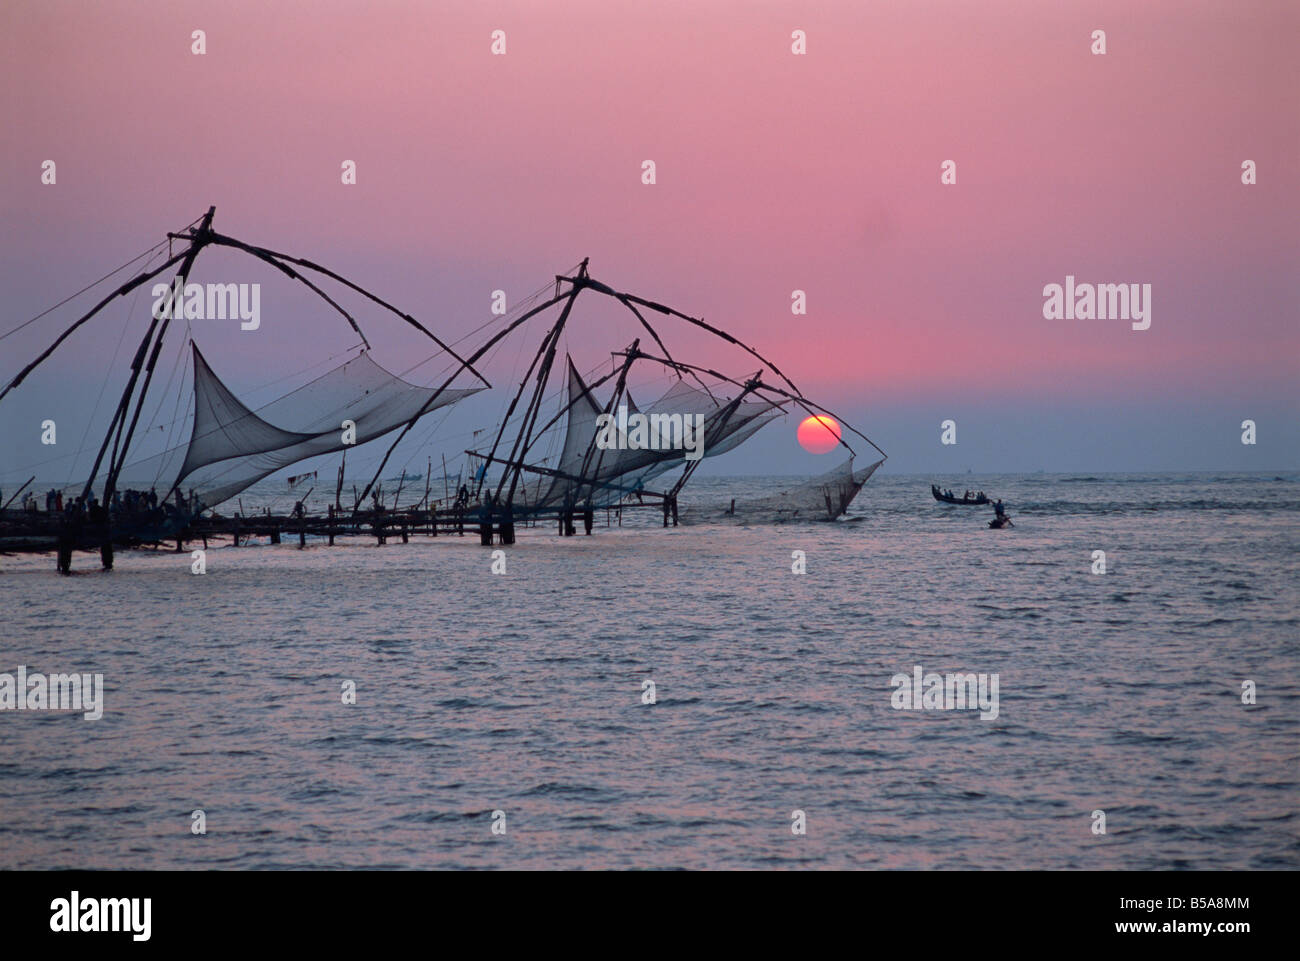 Chinesische Fischernetze bei Sonnenuntergang, Fort Cochin, Kerala Zustand, Indien Stockfoto